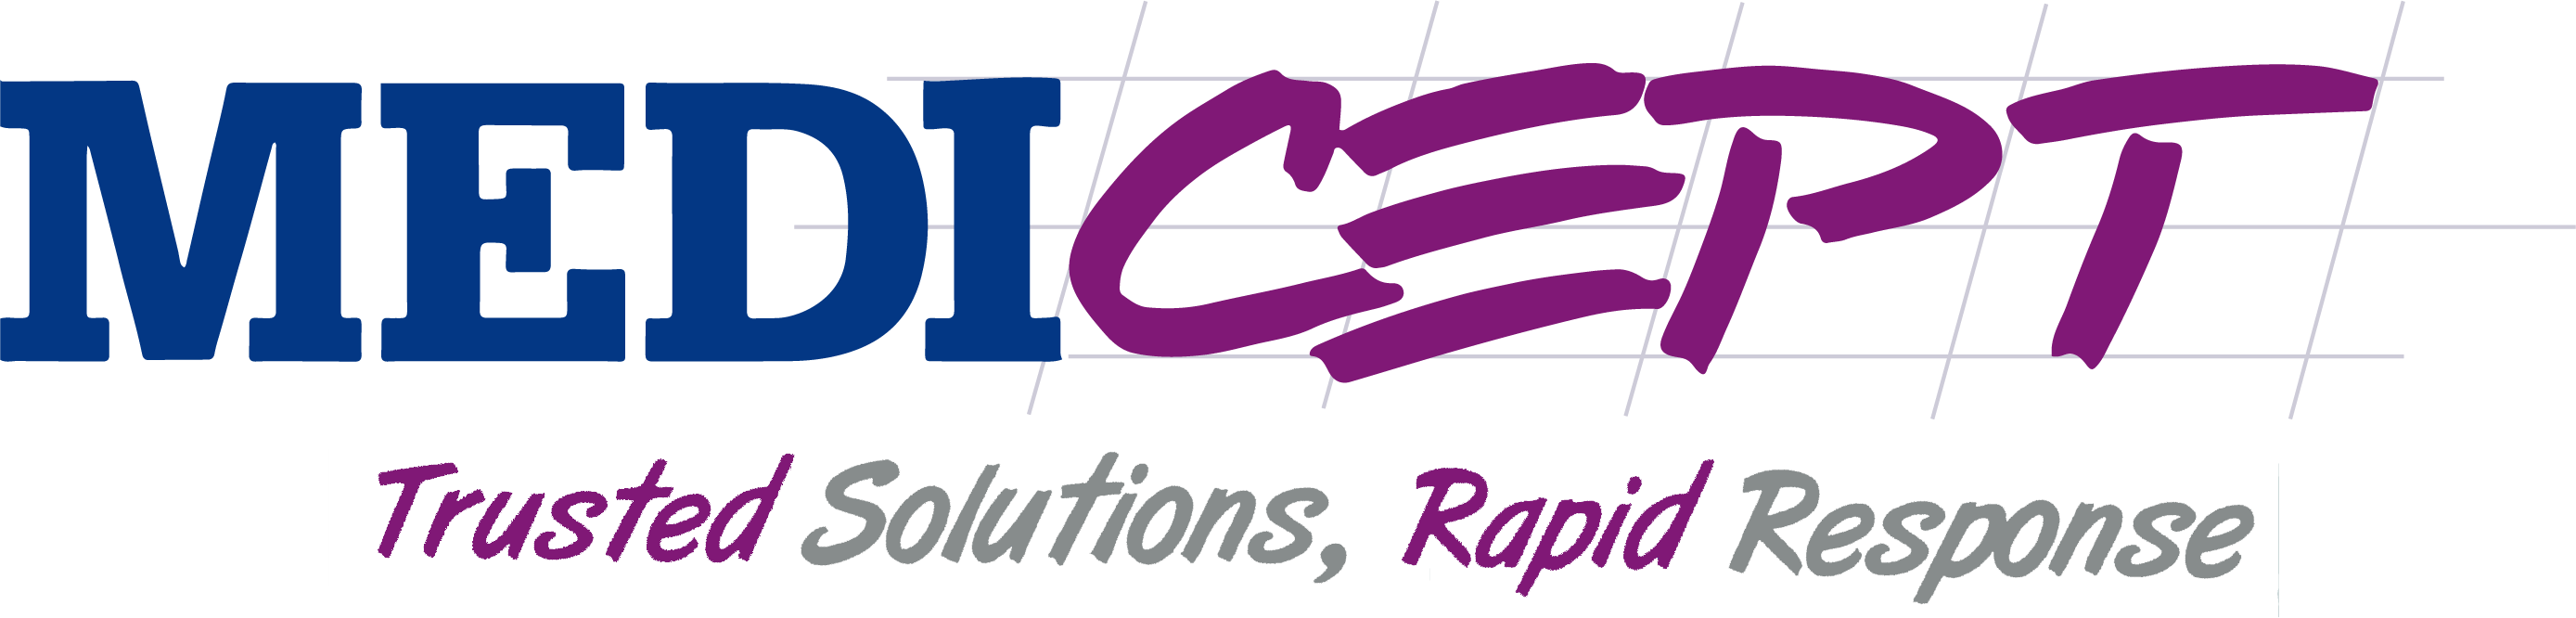 medicept Logo